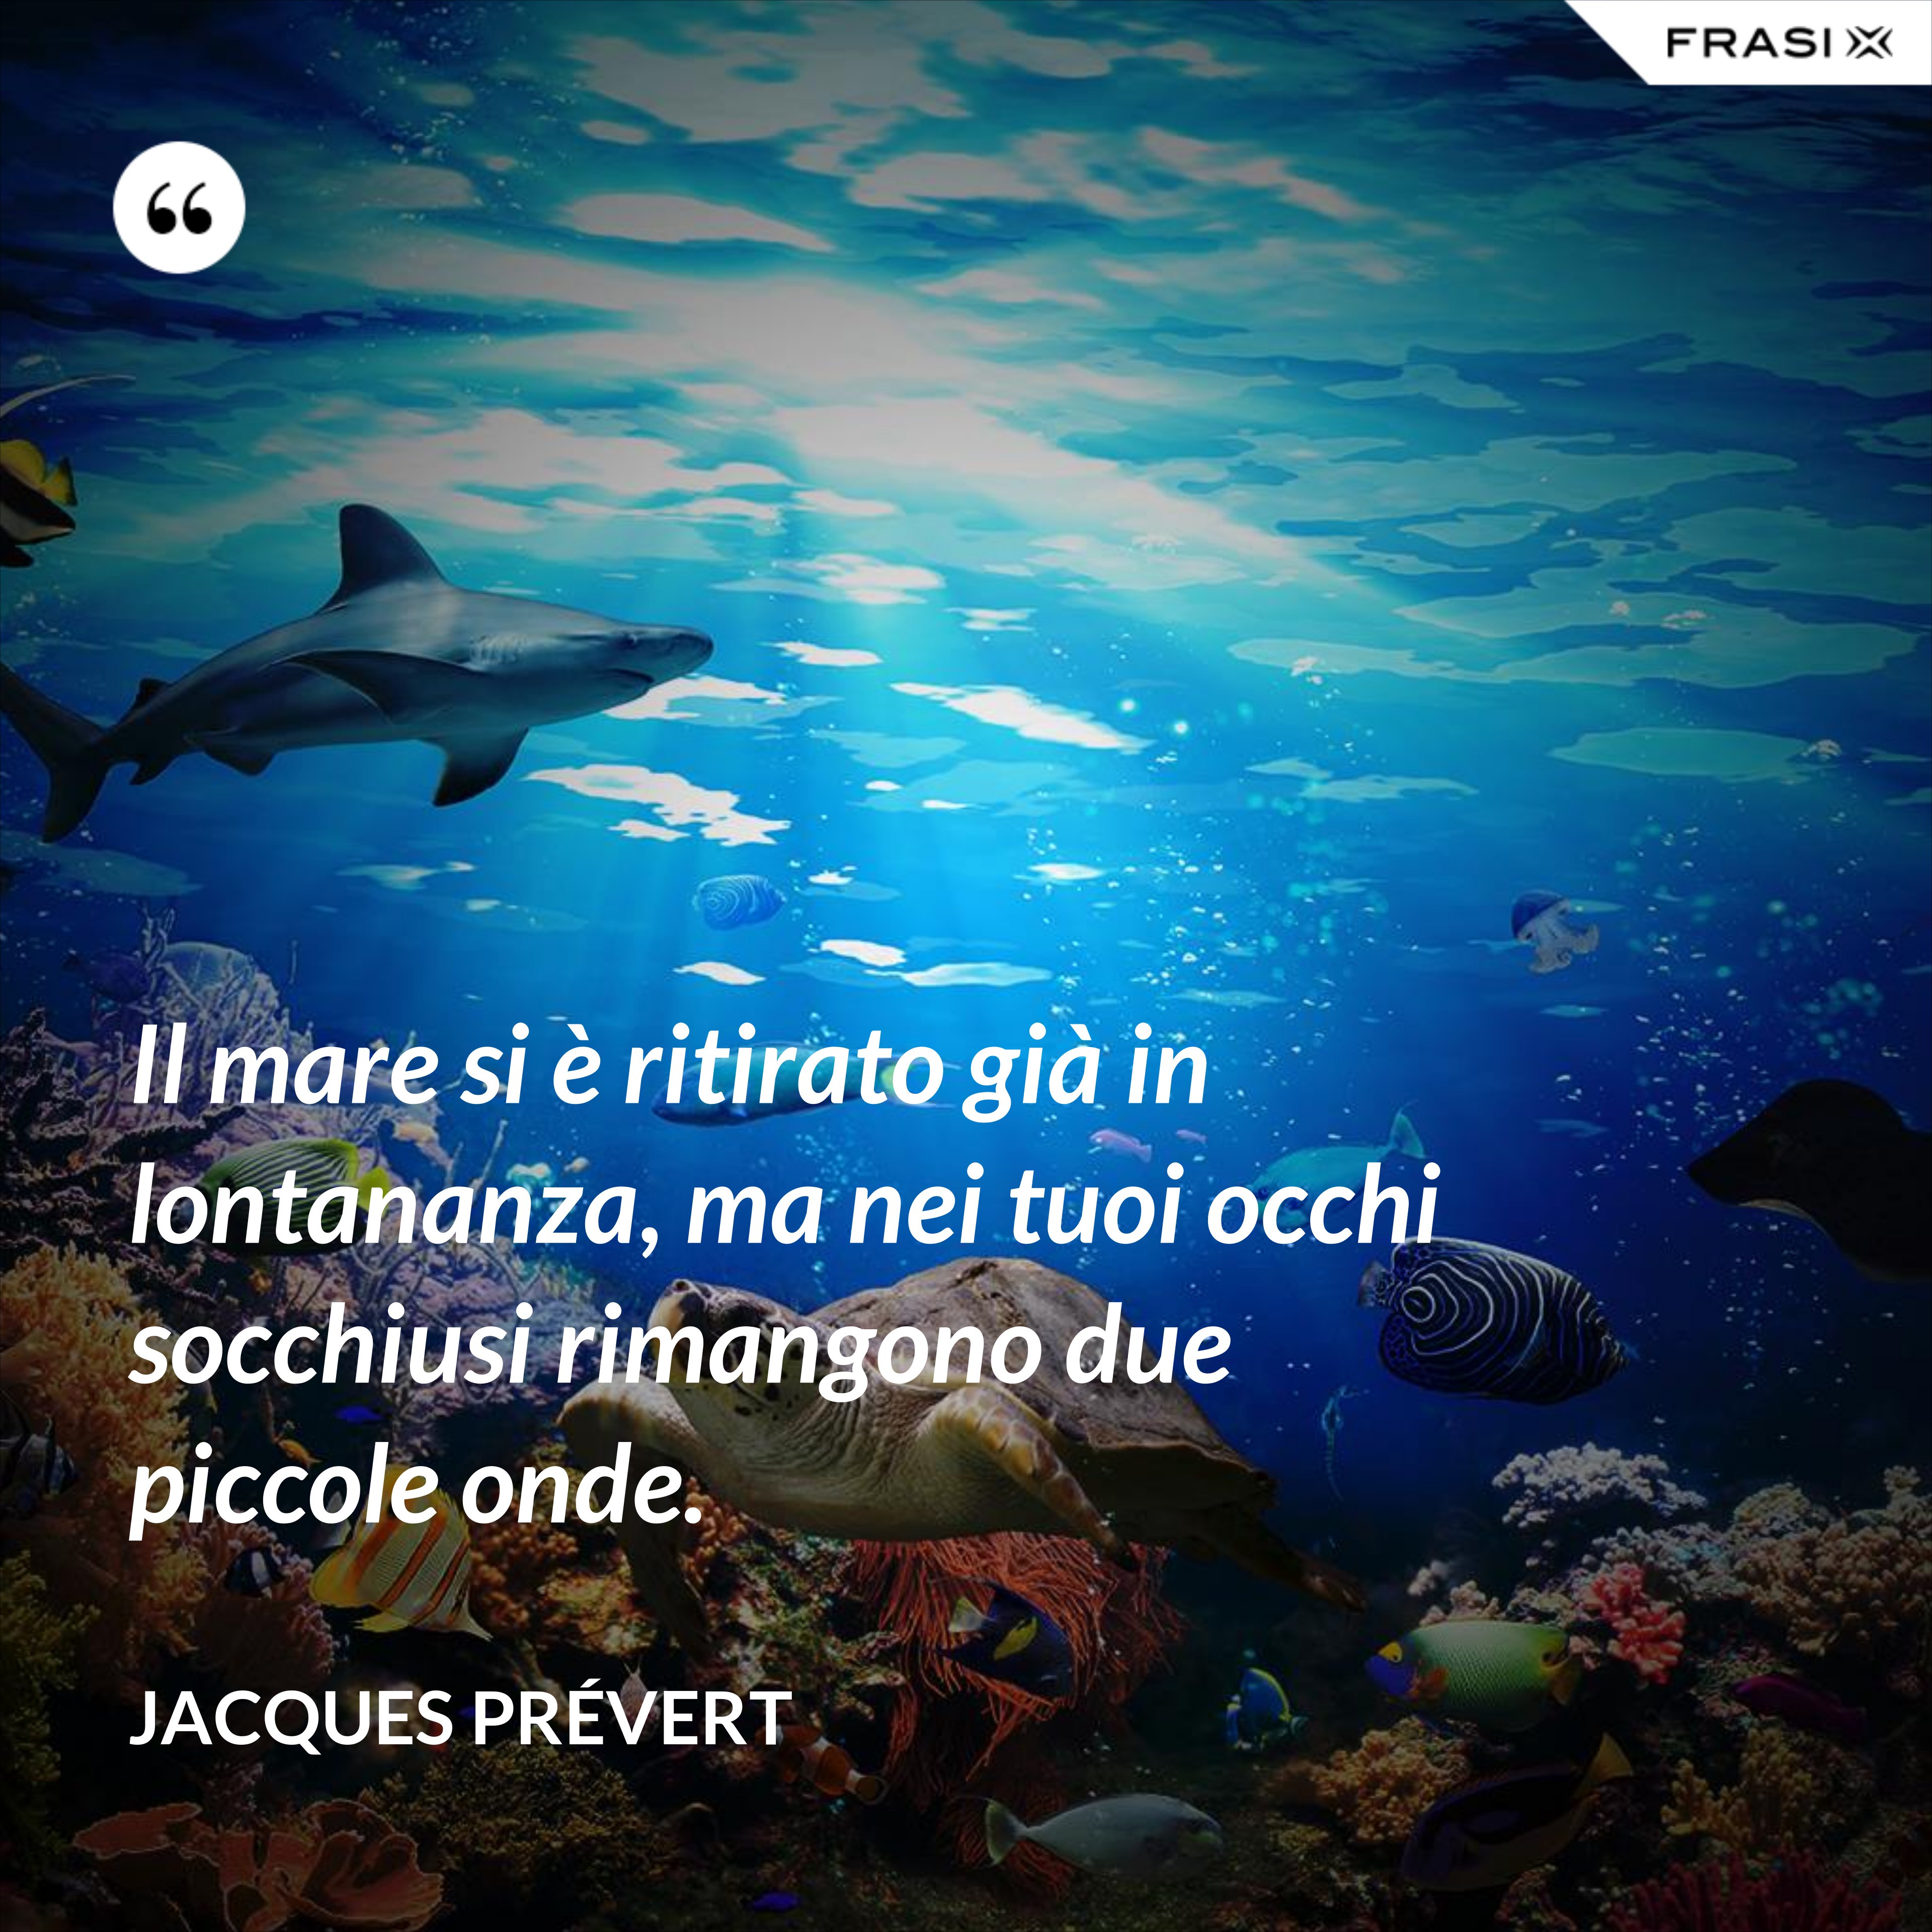 Il mare si è ritirato già in lontananza, ma nei tuoi occhi socchiusi rimangono due piccole onde. - Jacques Prévert